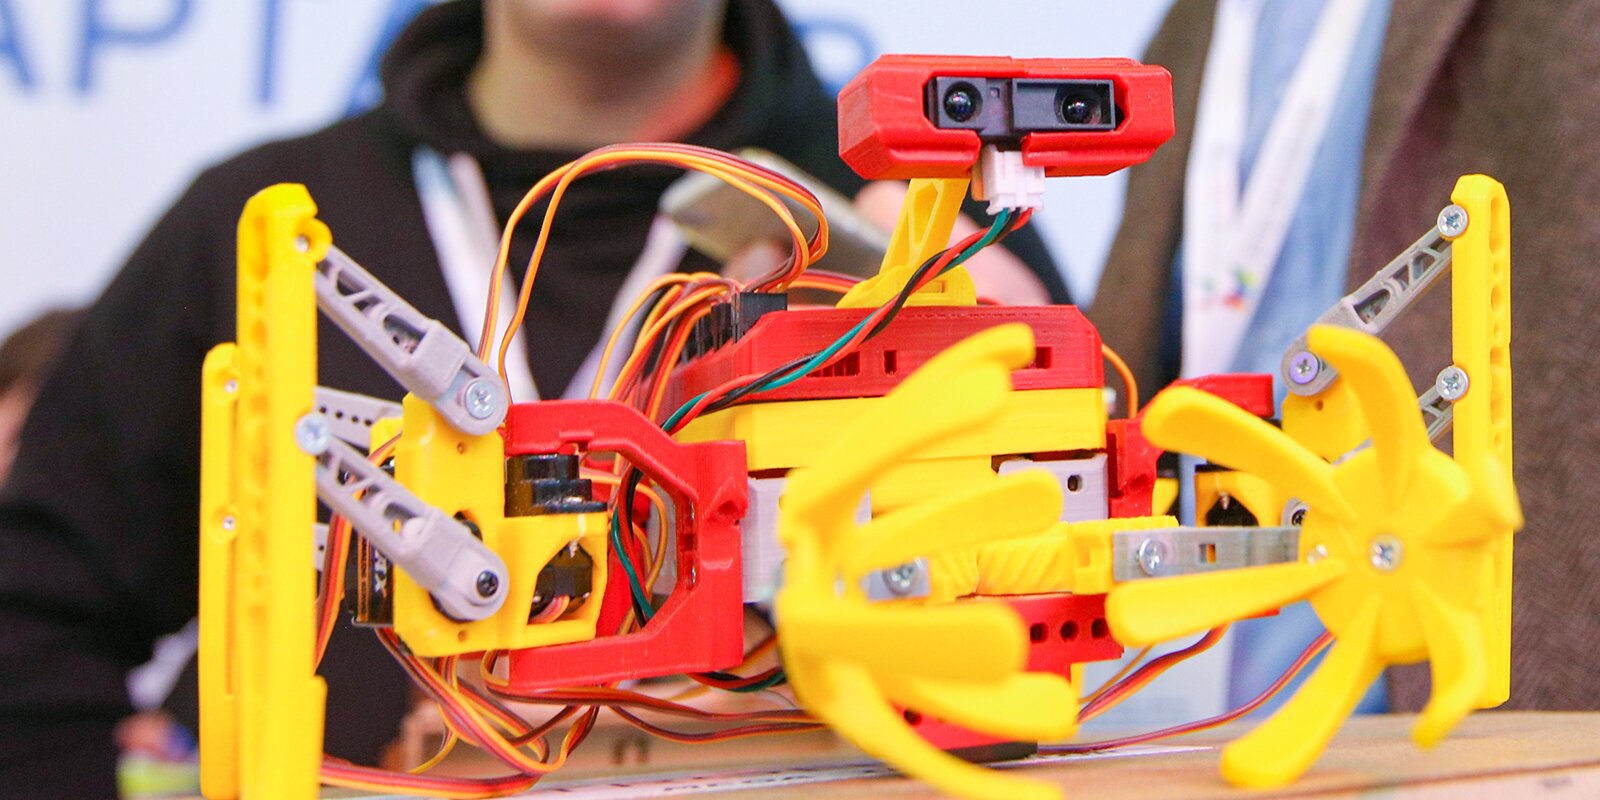 Соревнование по робототехнике для маленьких инженеров проведут в Москве